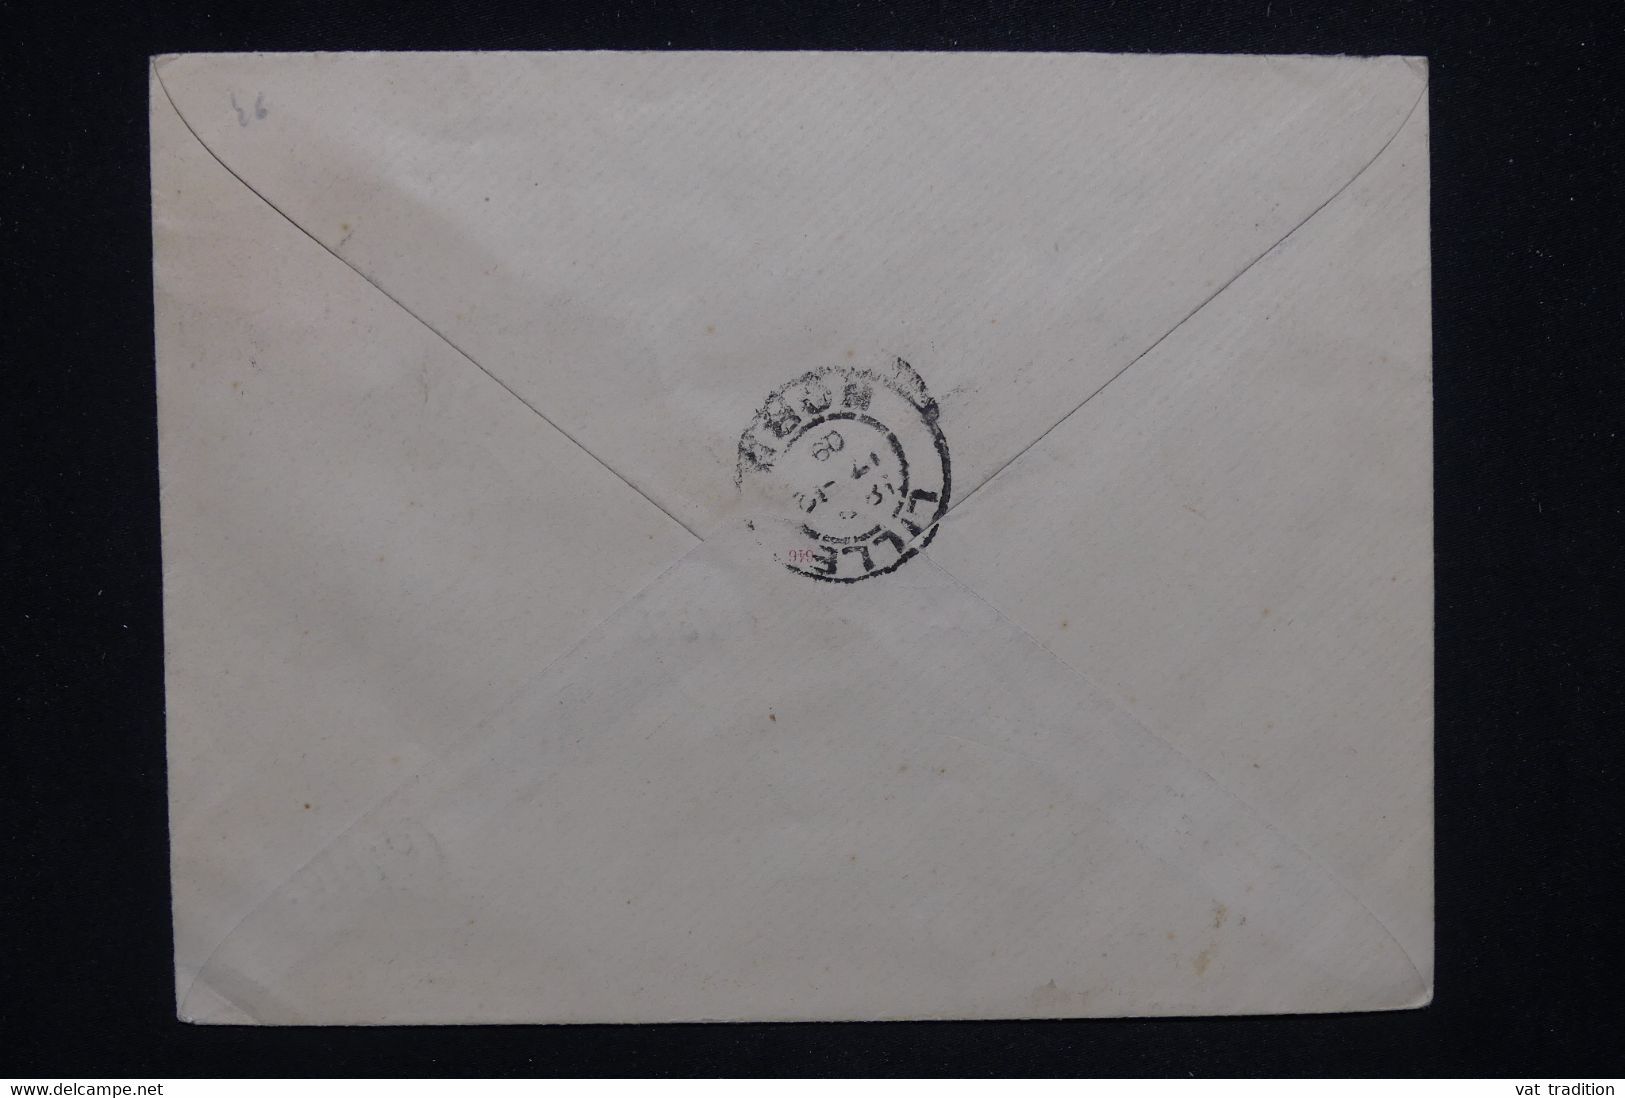 FRANCE - Entier Postal Semeuse ( Enveloppe Avec Repiquage Privé De Lille) De St Nazaire Pour Lille En 1909 - L 130012 - Umschläge Mit Aufdruck (vor 1995)